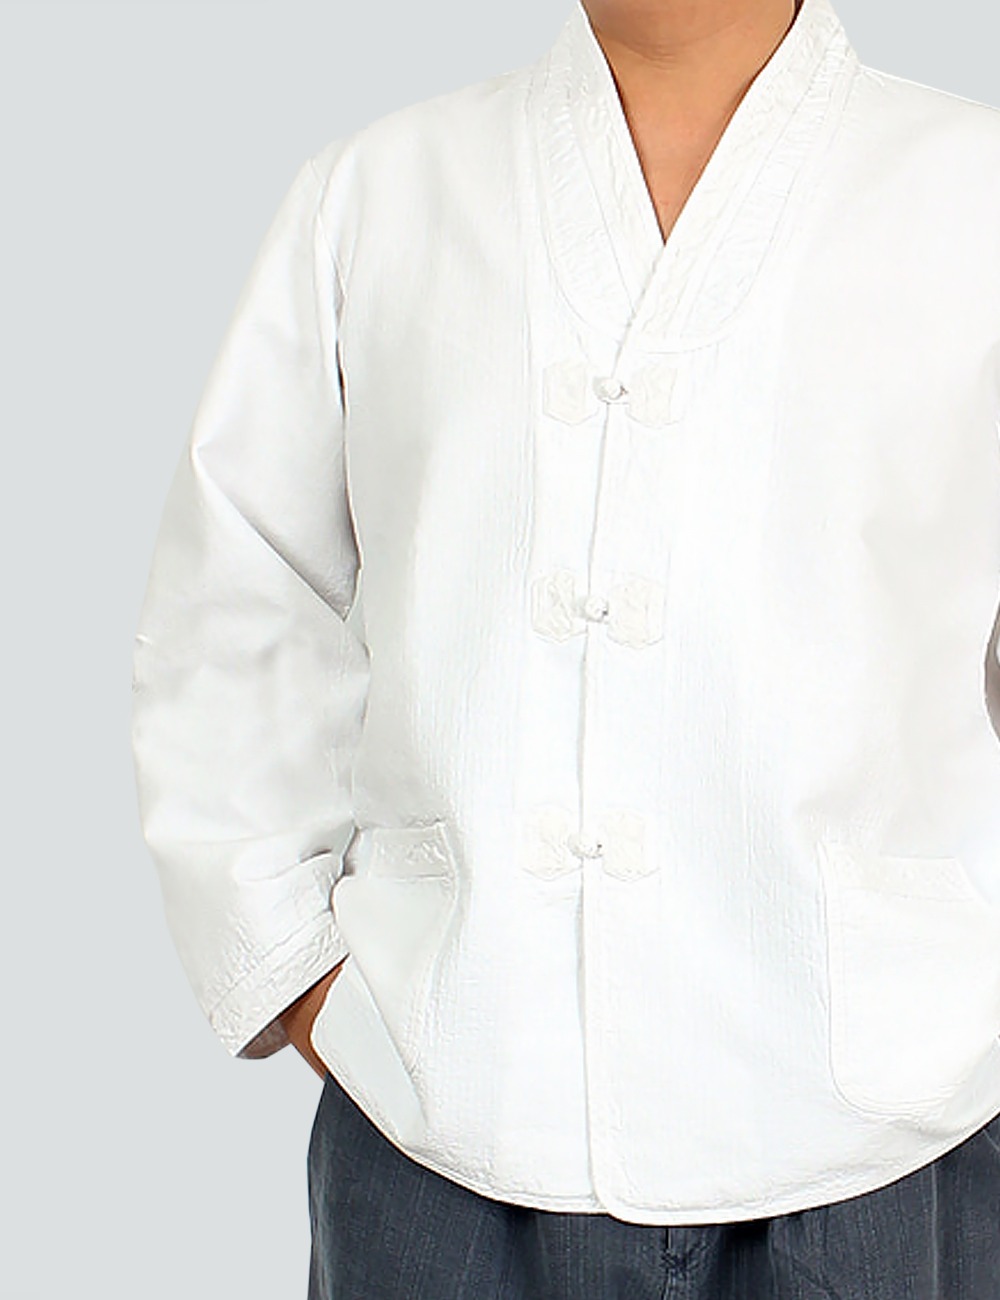 남성용 한복저고리 흰색셔츠 남방 남자개량한복-이육구팔